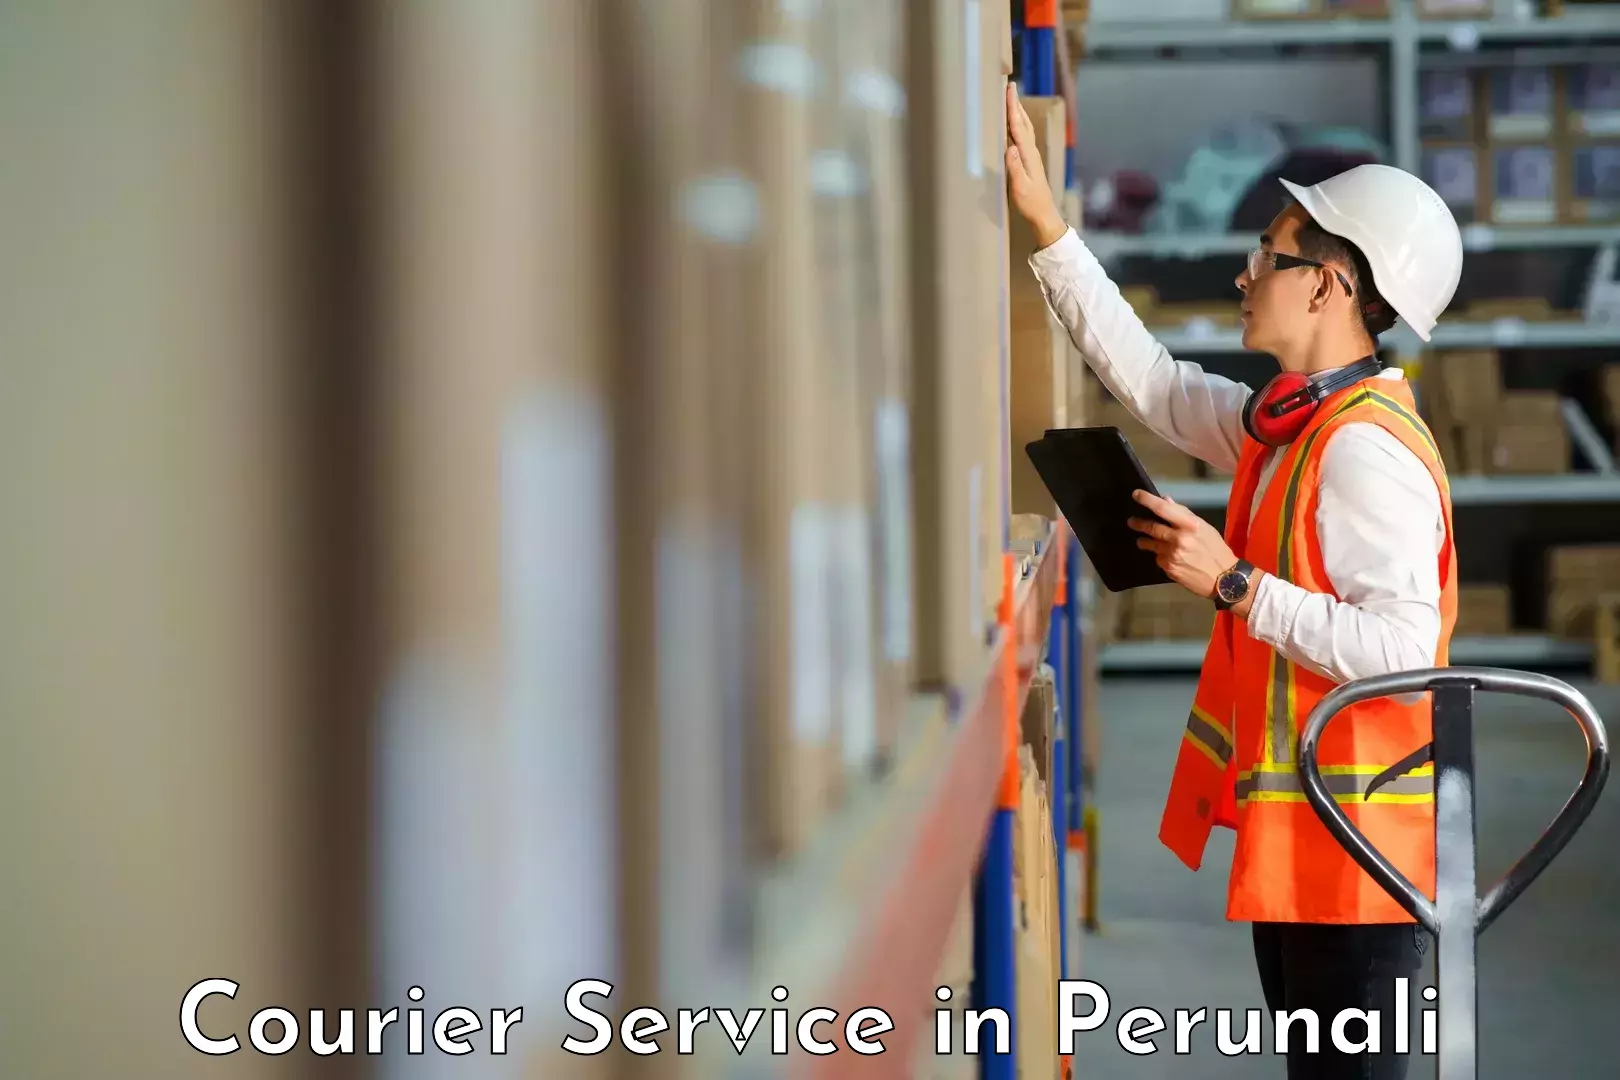 Courier service booking in Perunali